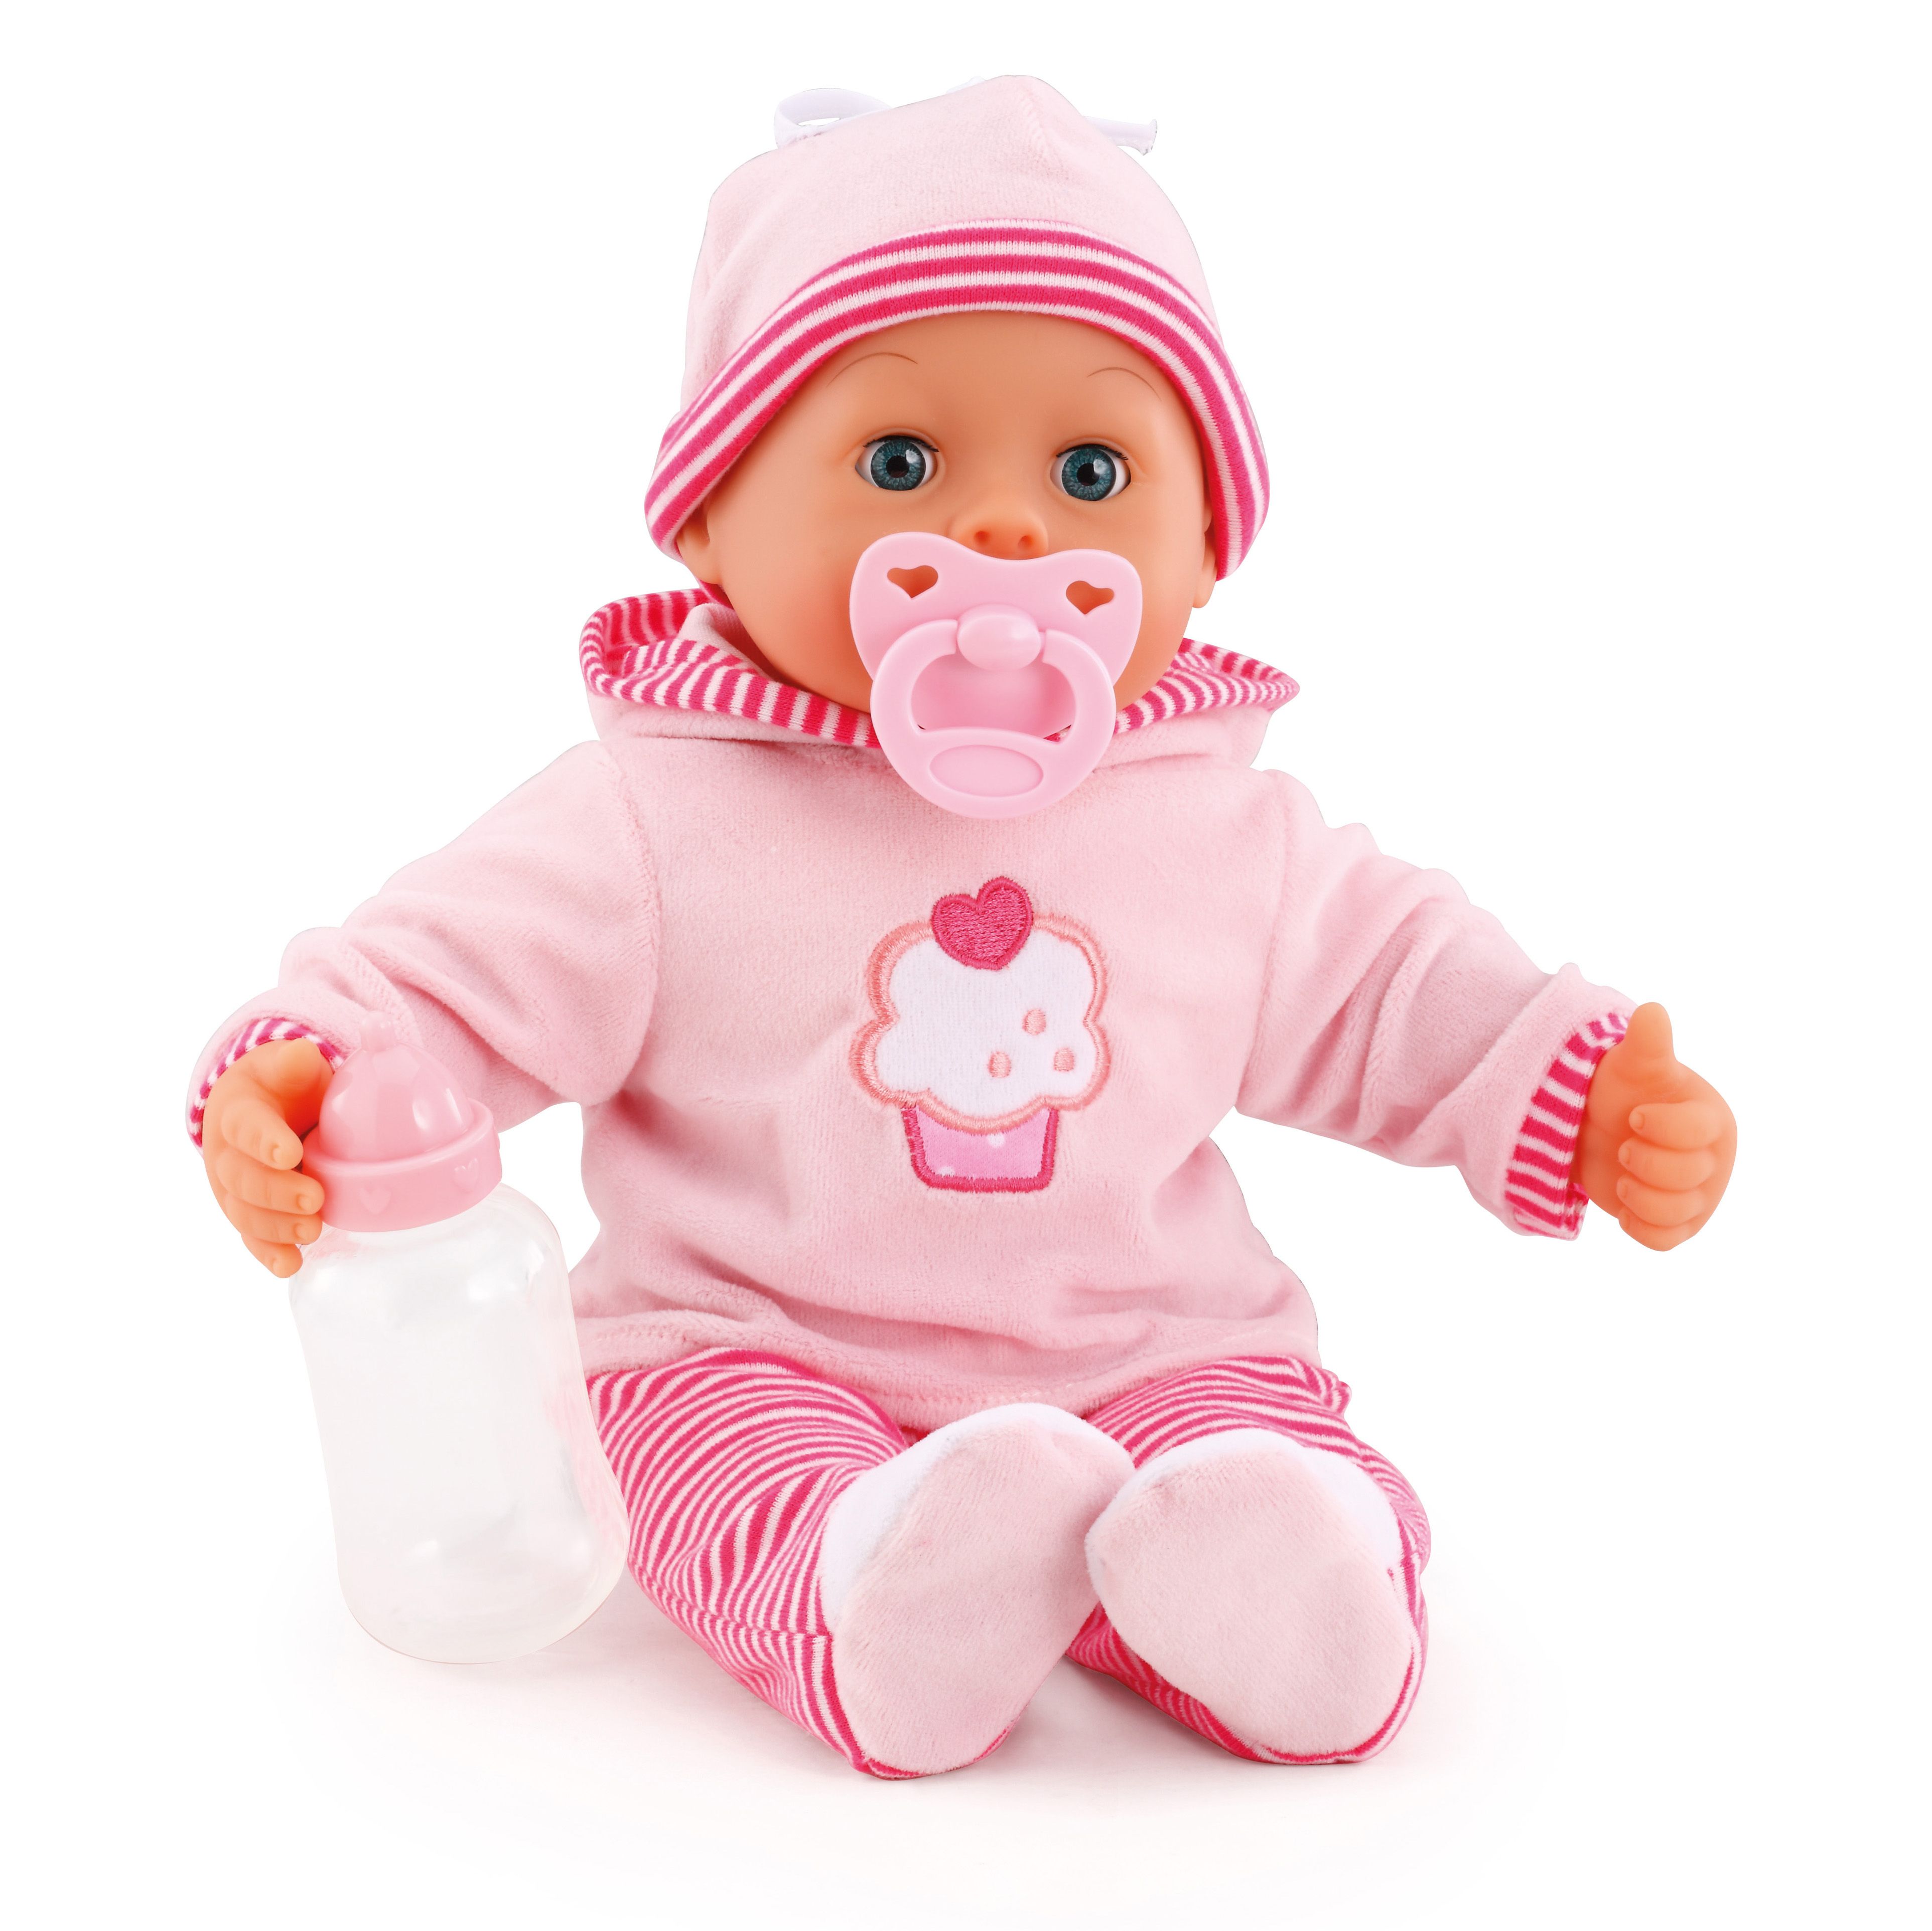 Кукла игрушка виды. Пупсы Байер 38см. Bayer кукла 38 см. Bayer Design пупс младенец. Кукла Bayer мягкотелая.